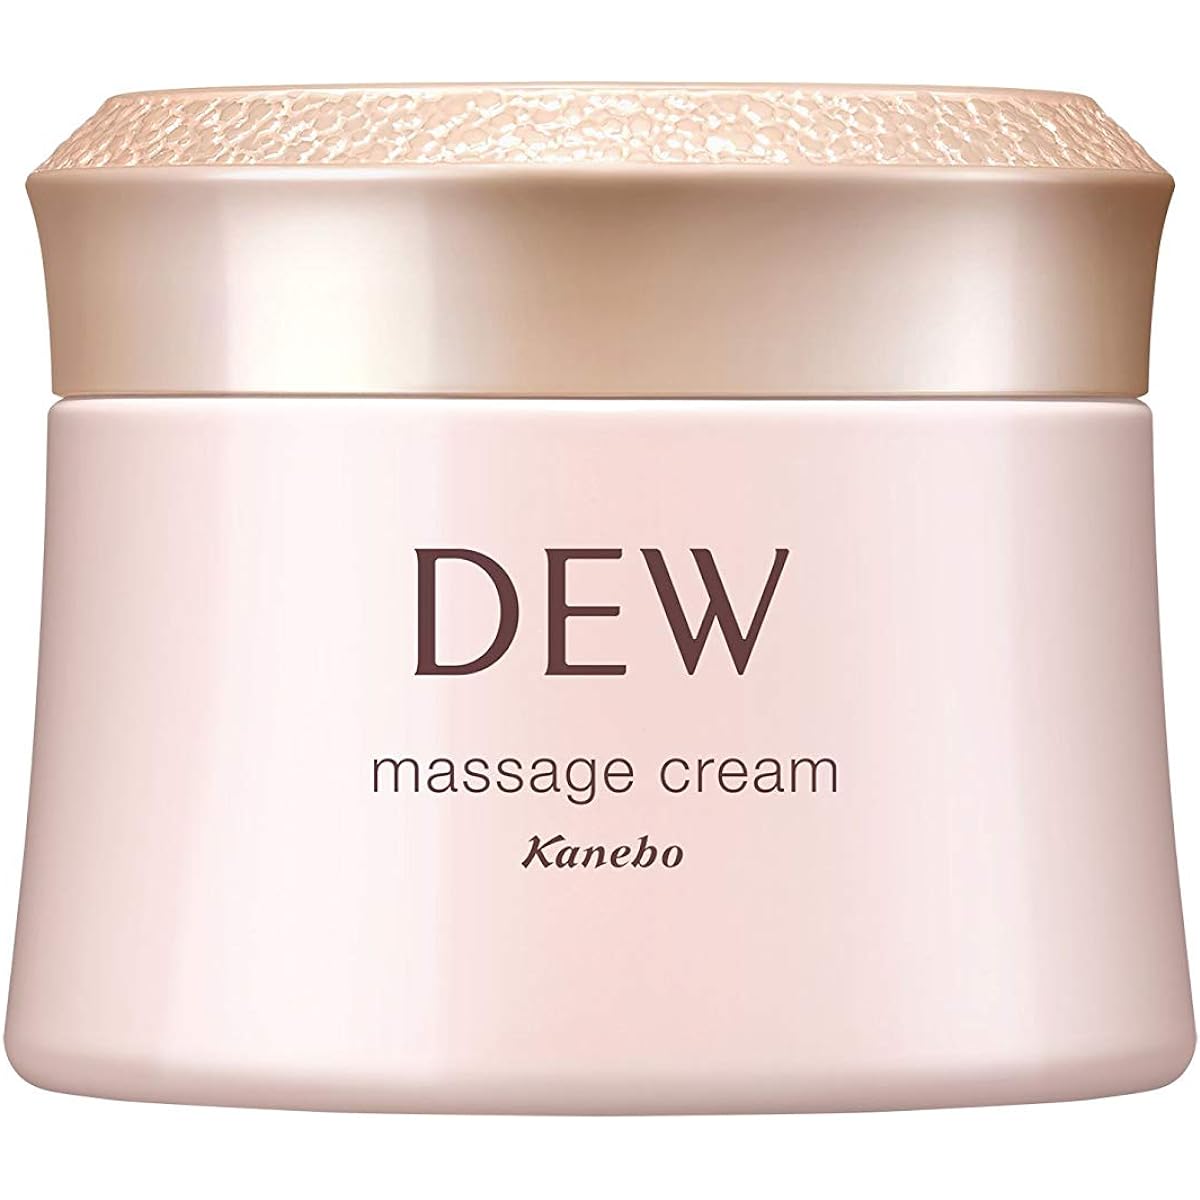 DEW massage cream 100g